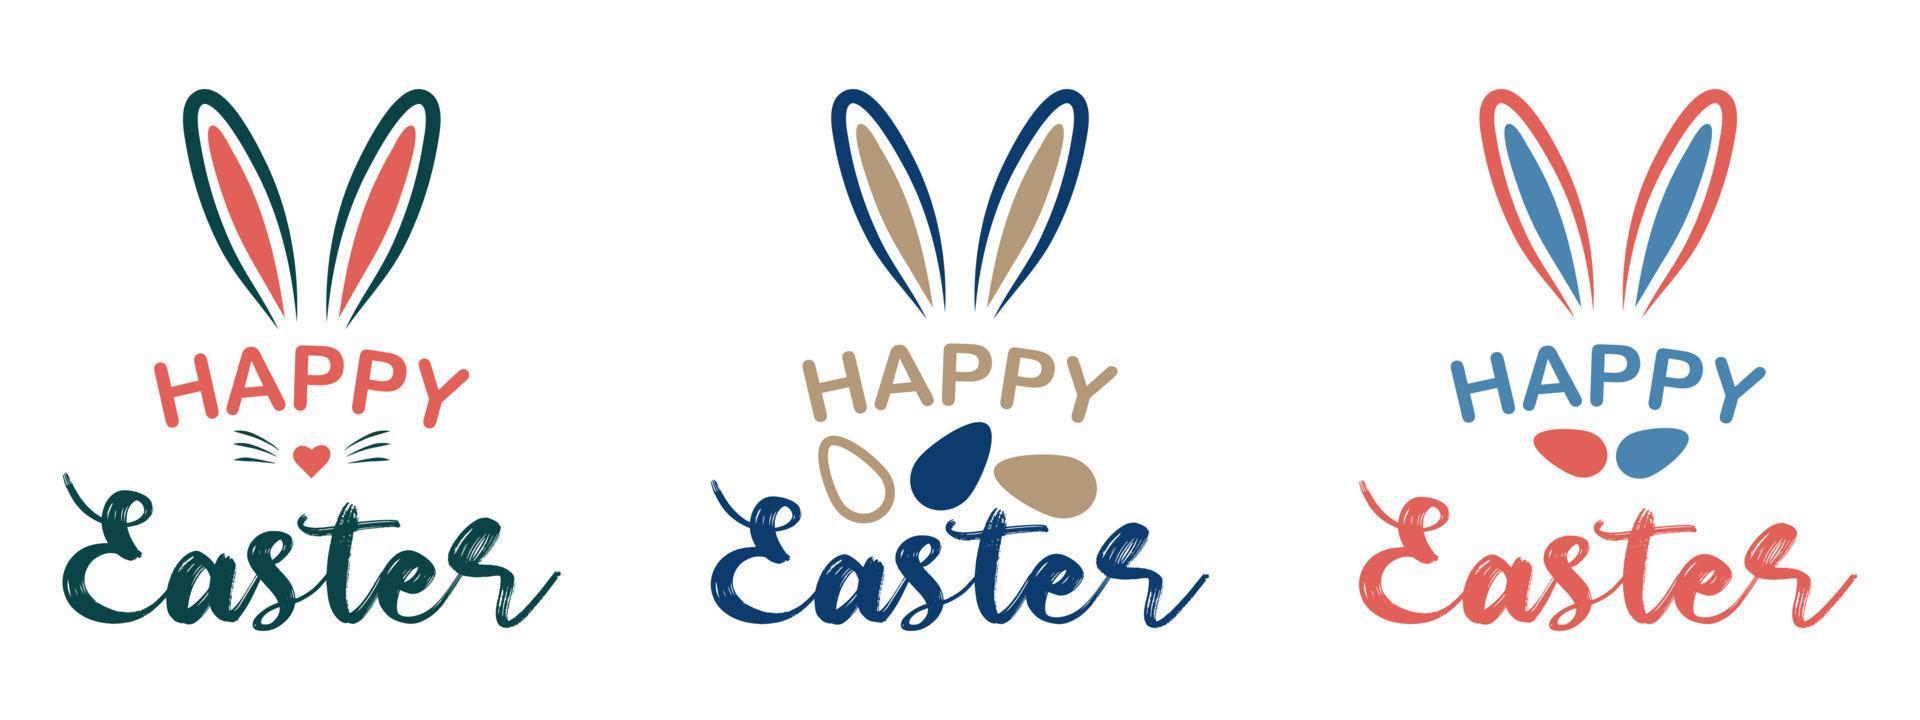 Lycklig påsk färgrik begrepp design, berättelse mall och baner med kanin öron och påsk ägg isolerat på vit bakgrund. vektor